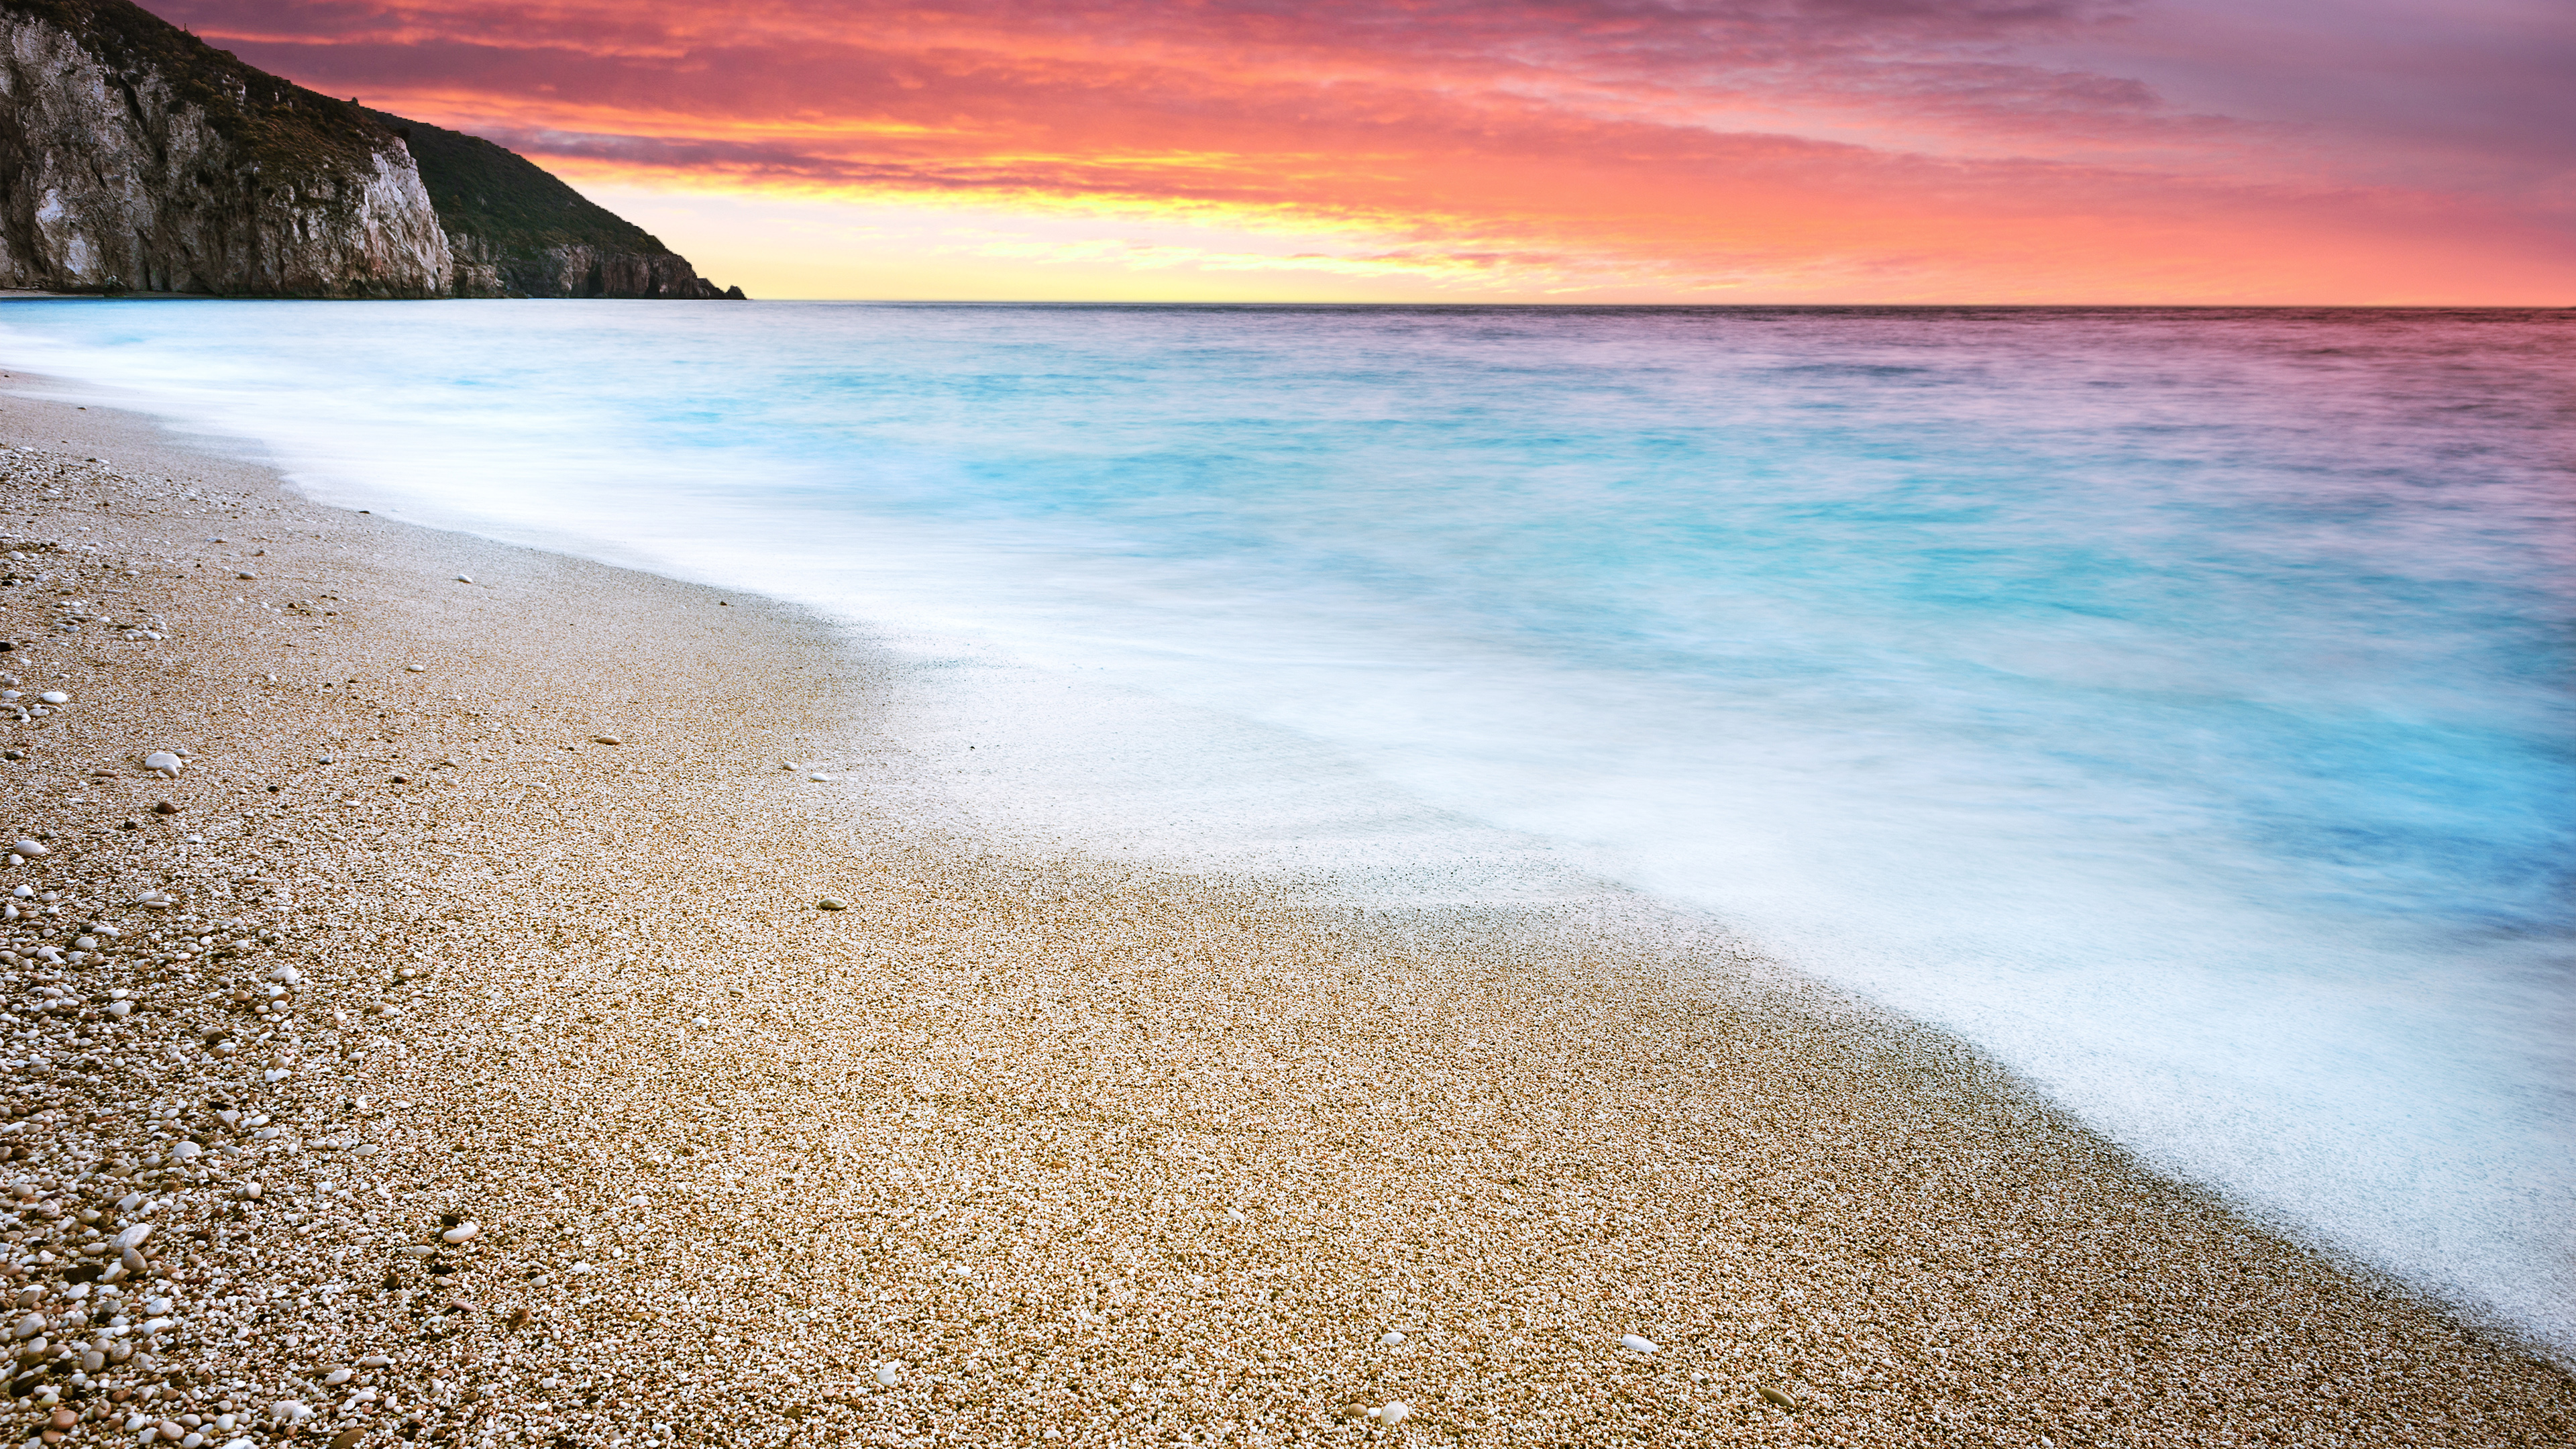 Milos Beach Sunset Wallpapers